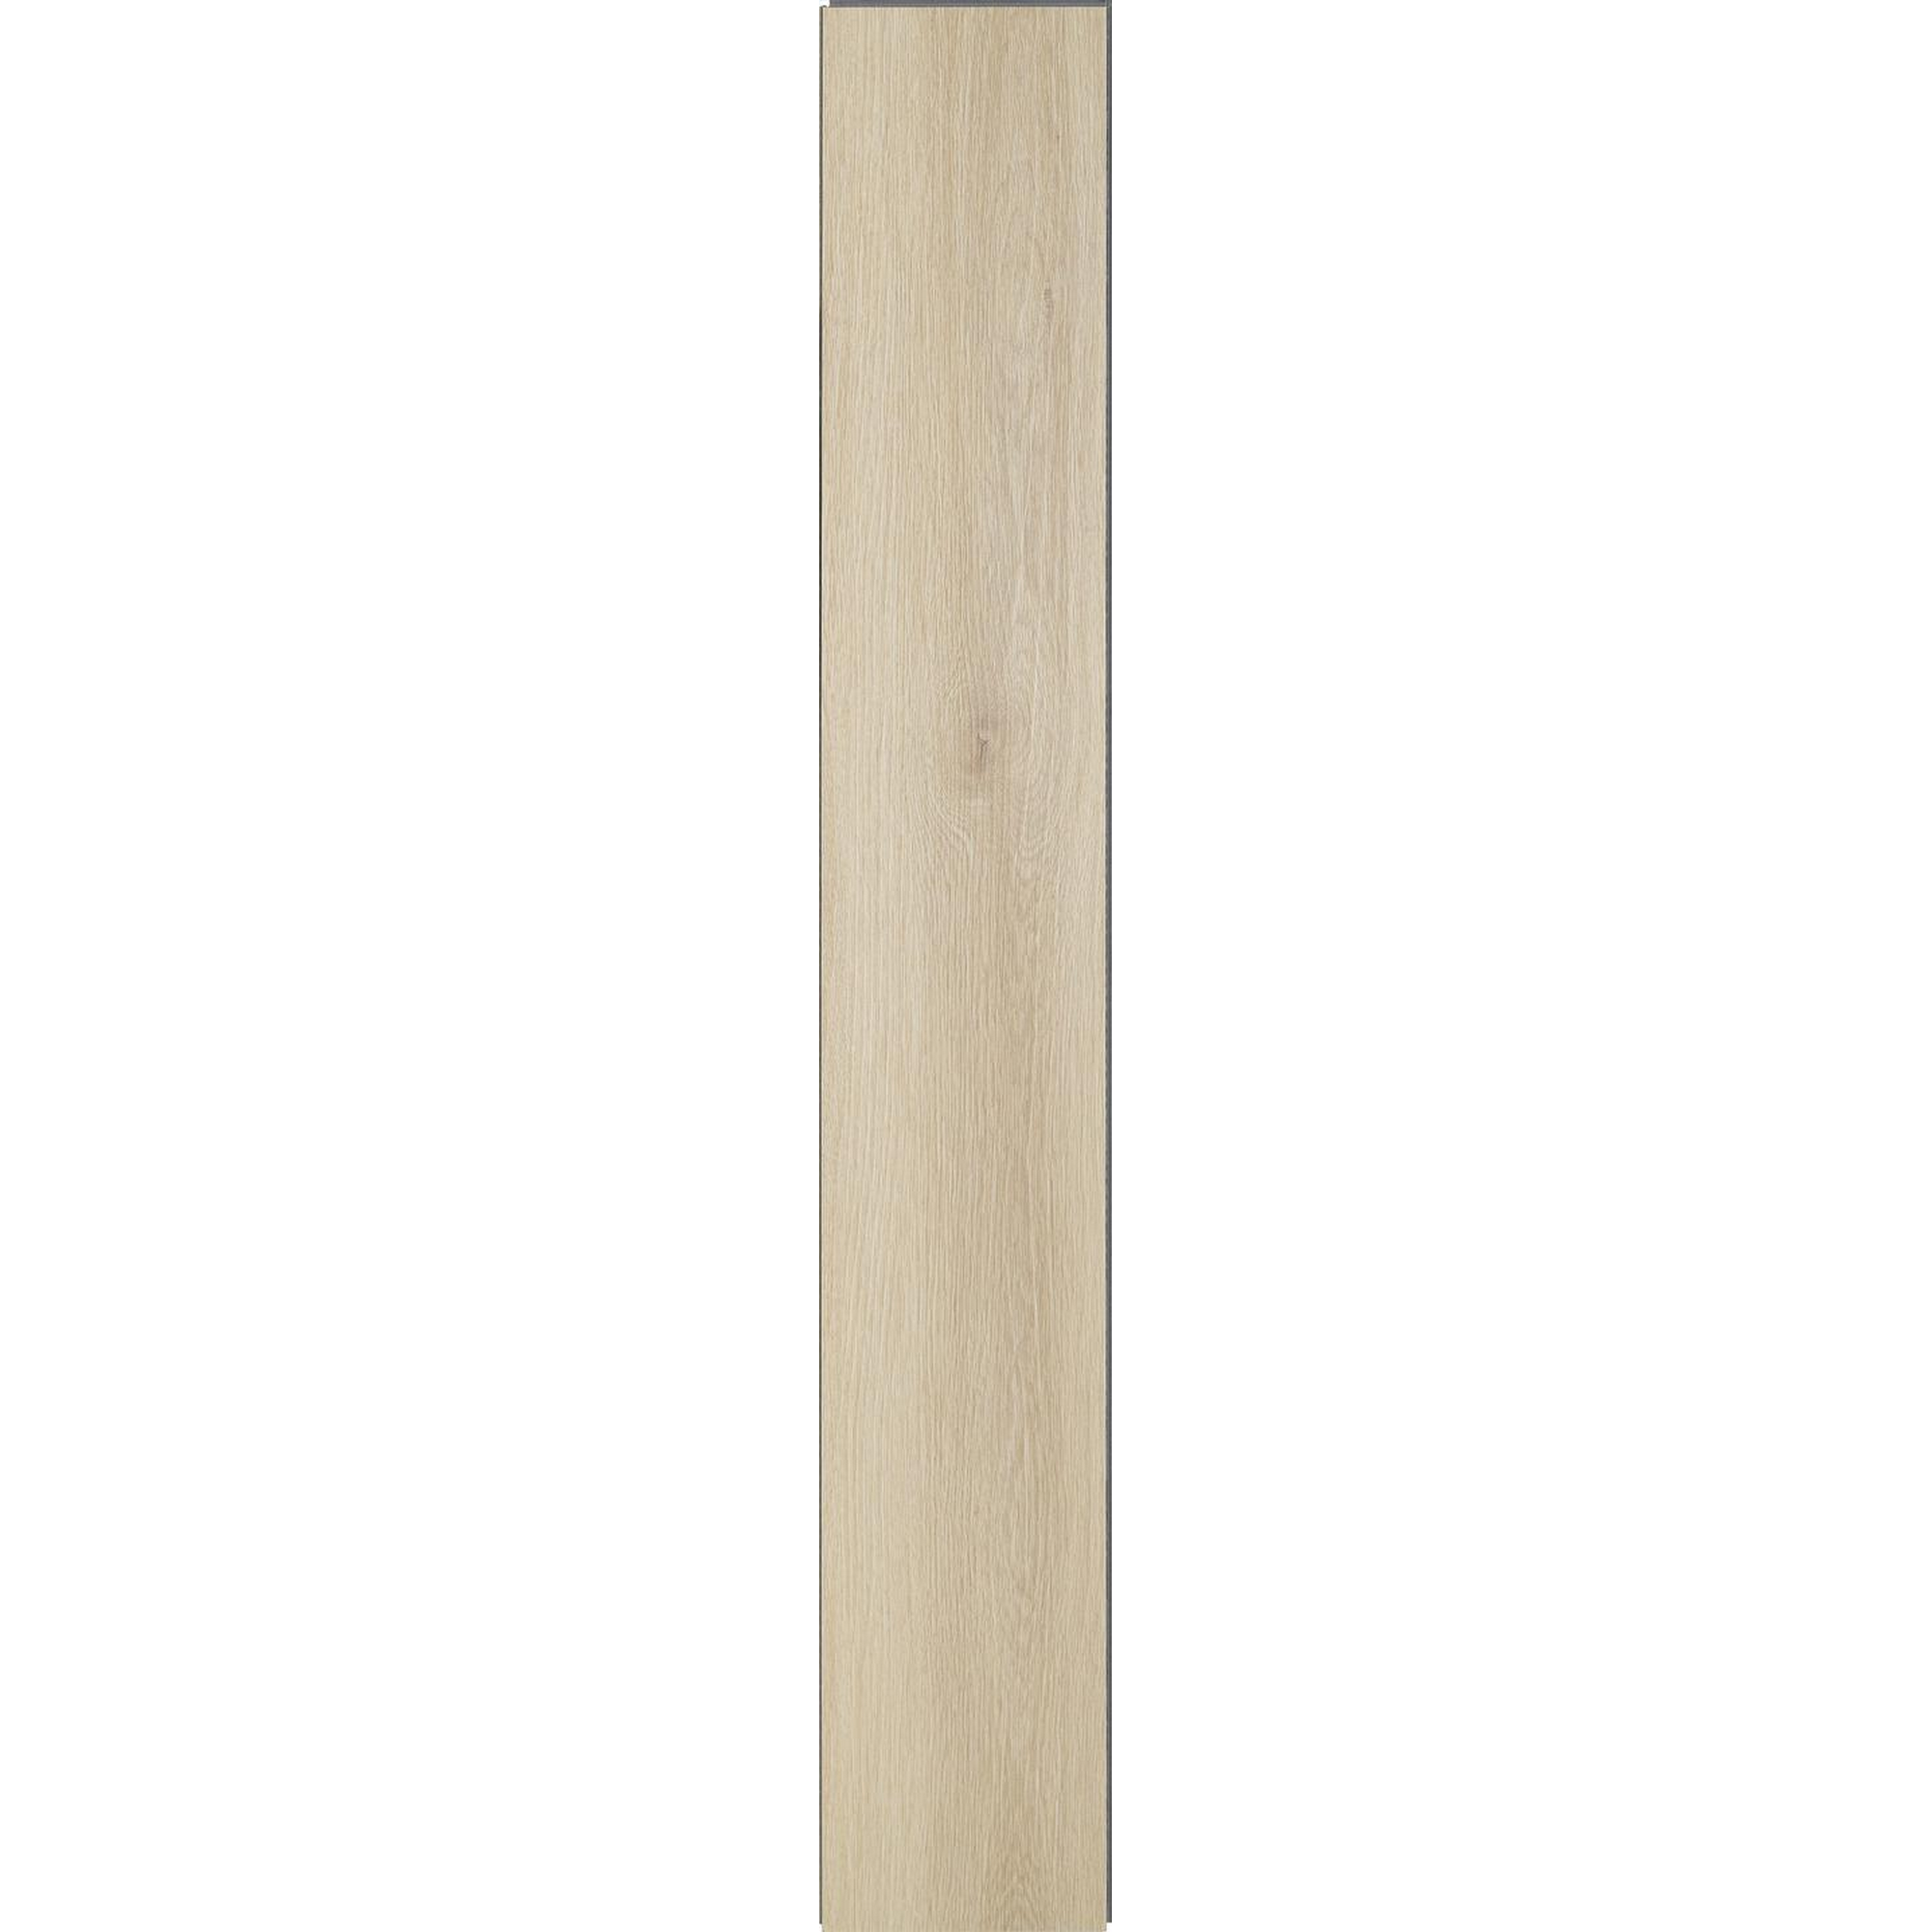 Rigid-Vinylboden Casolton Oak eichefarben 3,5 mm + product picture